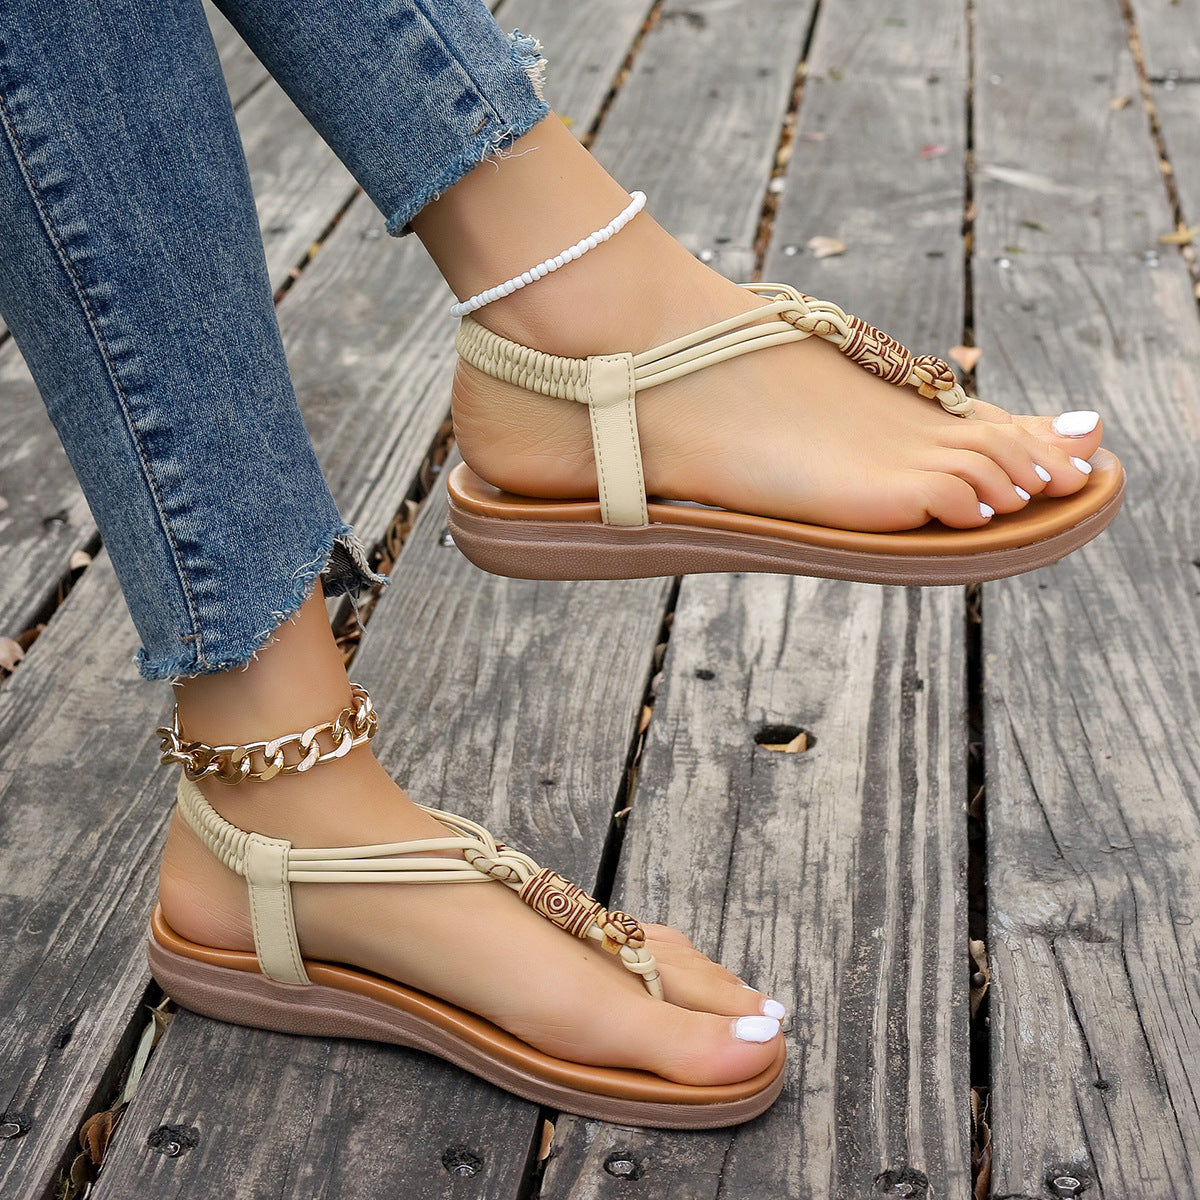 New Women's Flat Sandals Summer Thong Roman Shoes